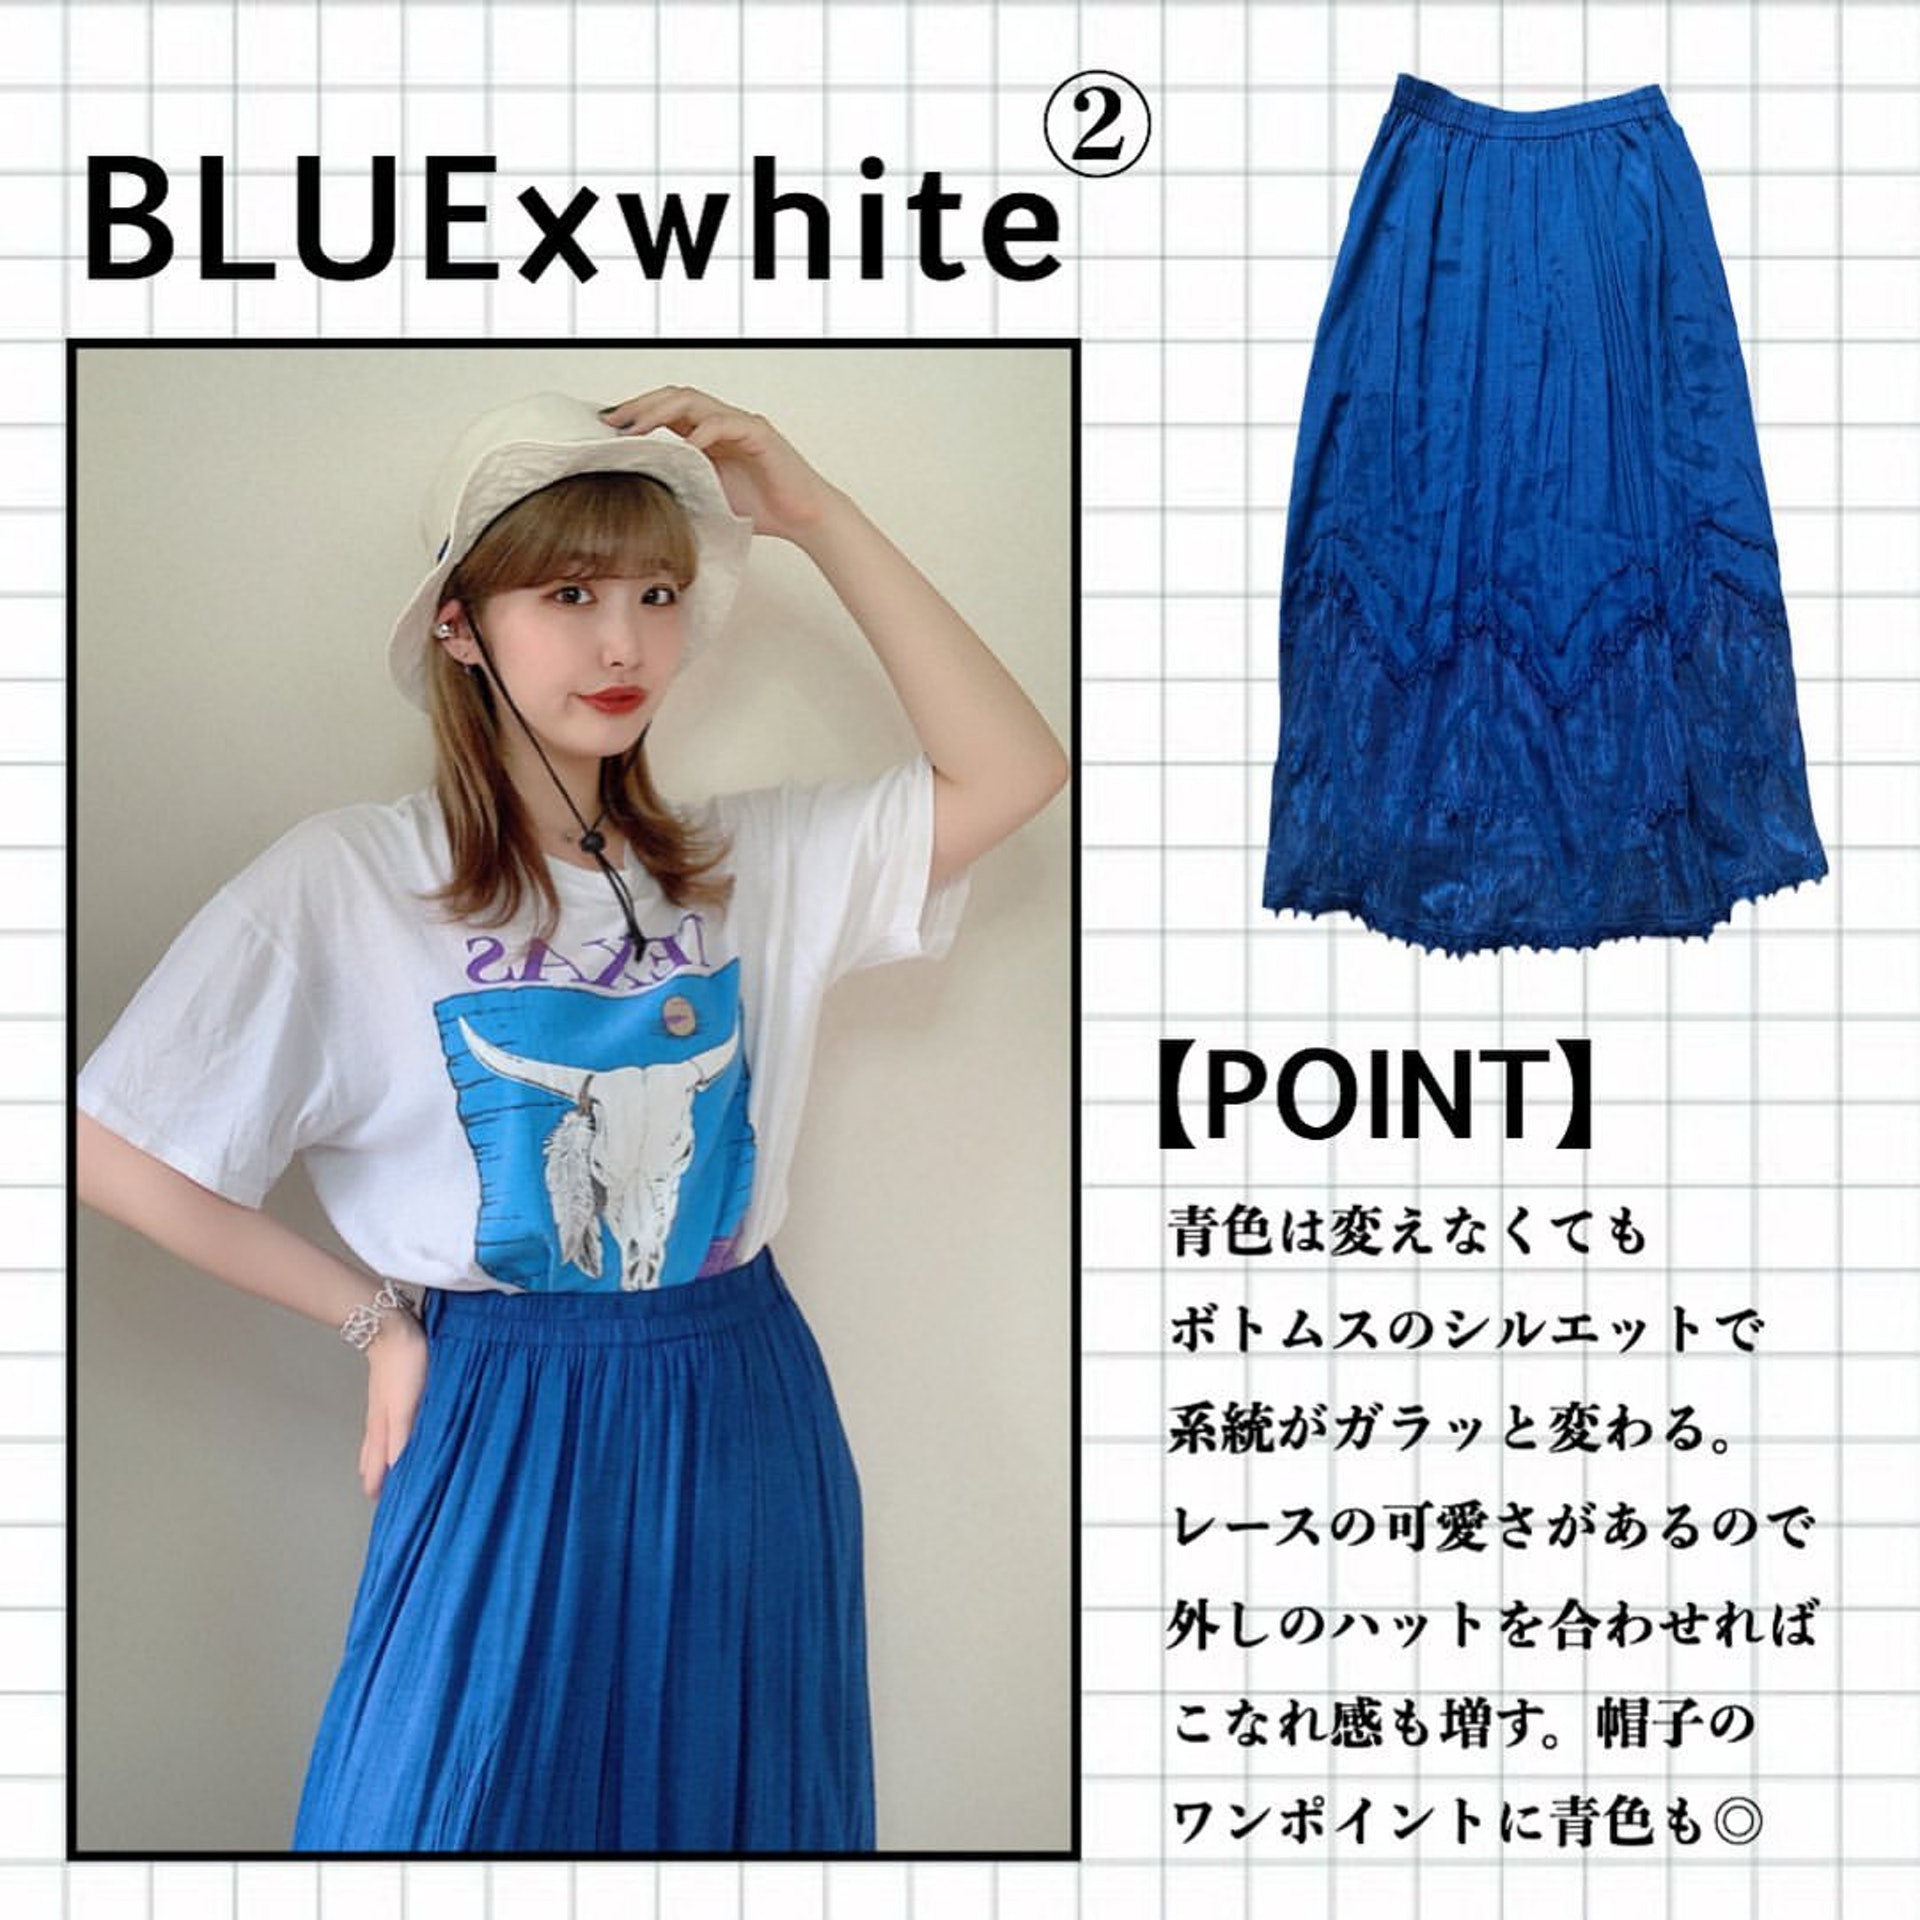 如果想感覺更為女性化，可像Chaki一樣選擇百褶裙款；她所穿的藍色裙款亦正正與白色T-Shirt上的圖案相輔相成。(__nmsk13@Instagram)